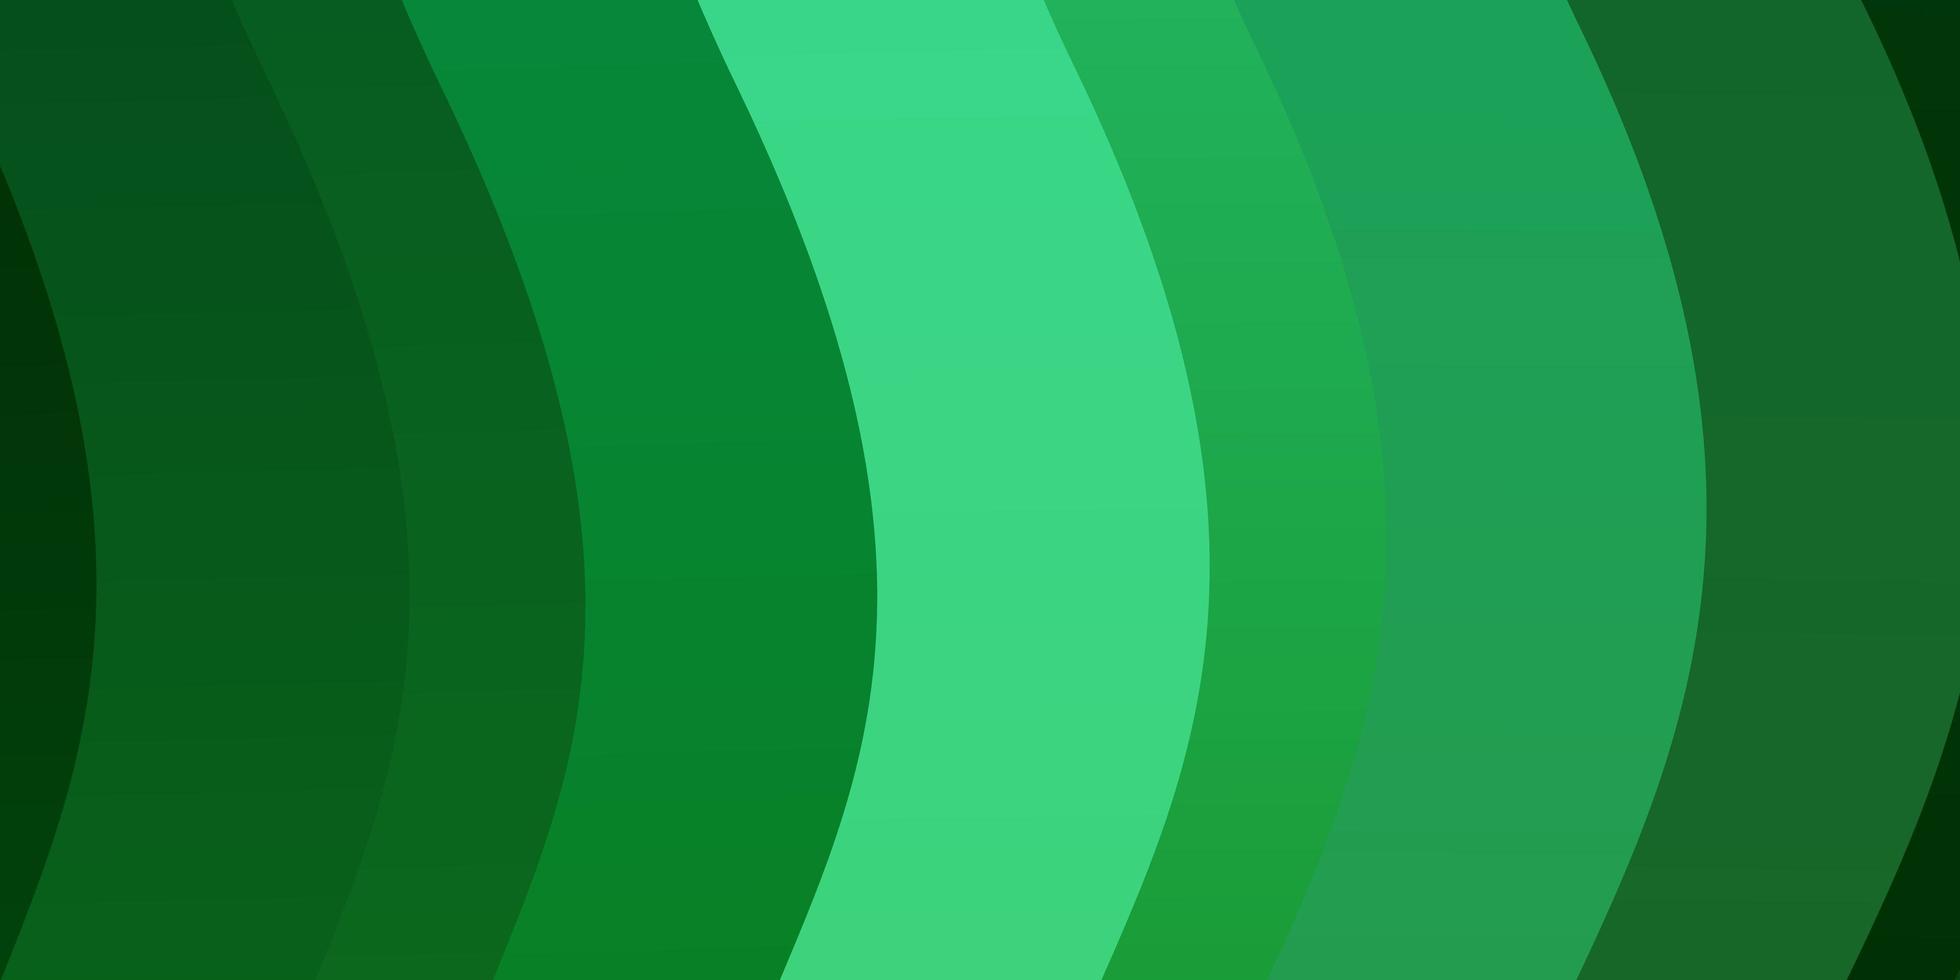 textura de vetor verde claro com arco circular